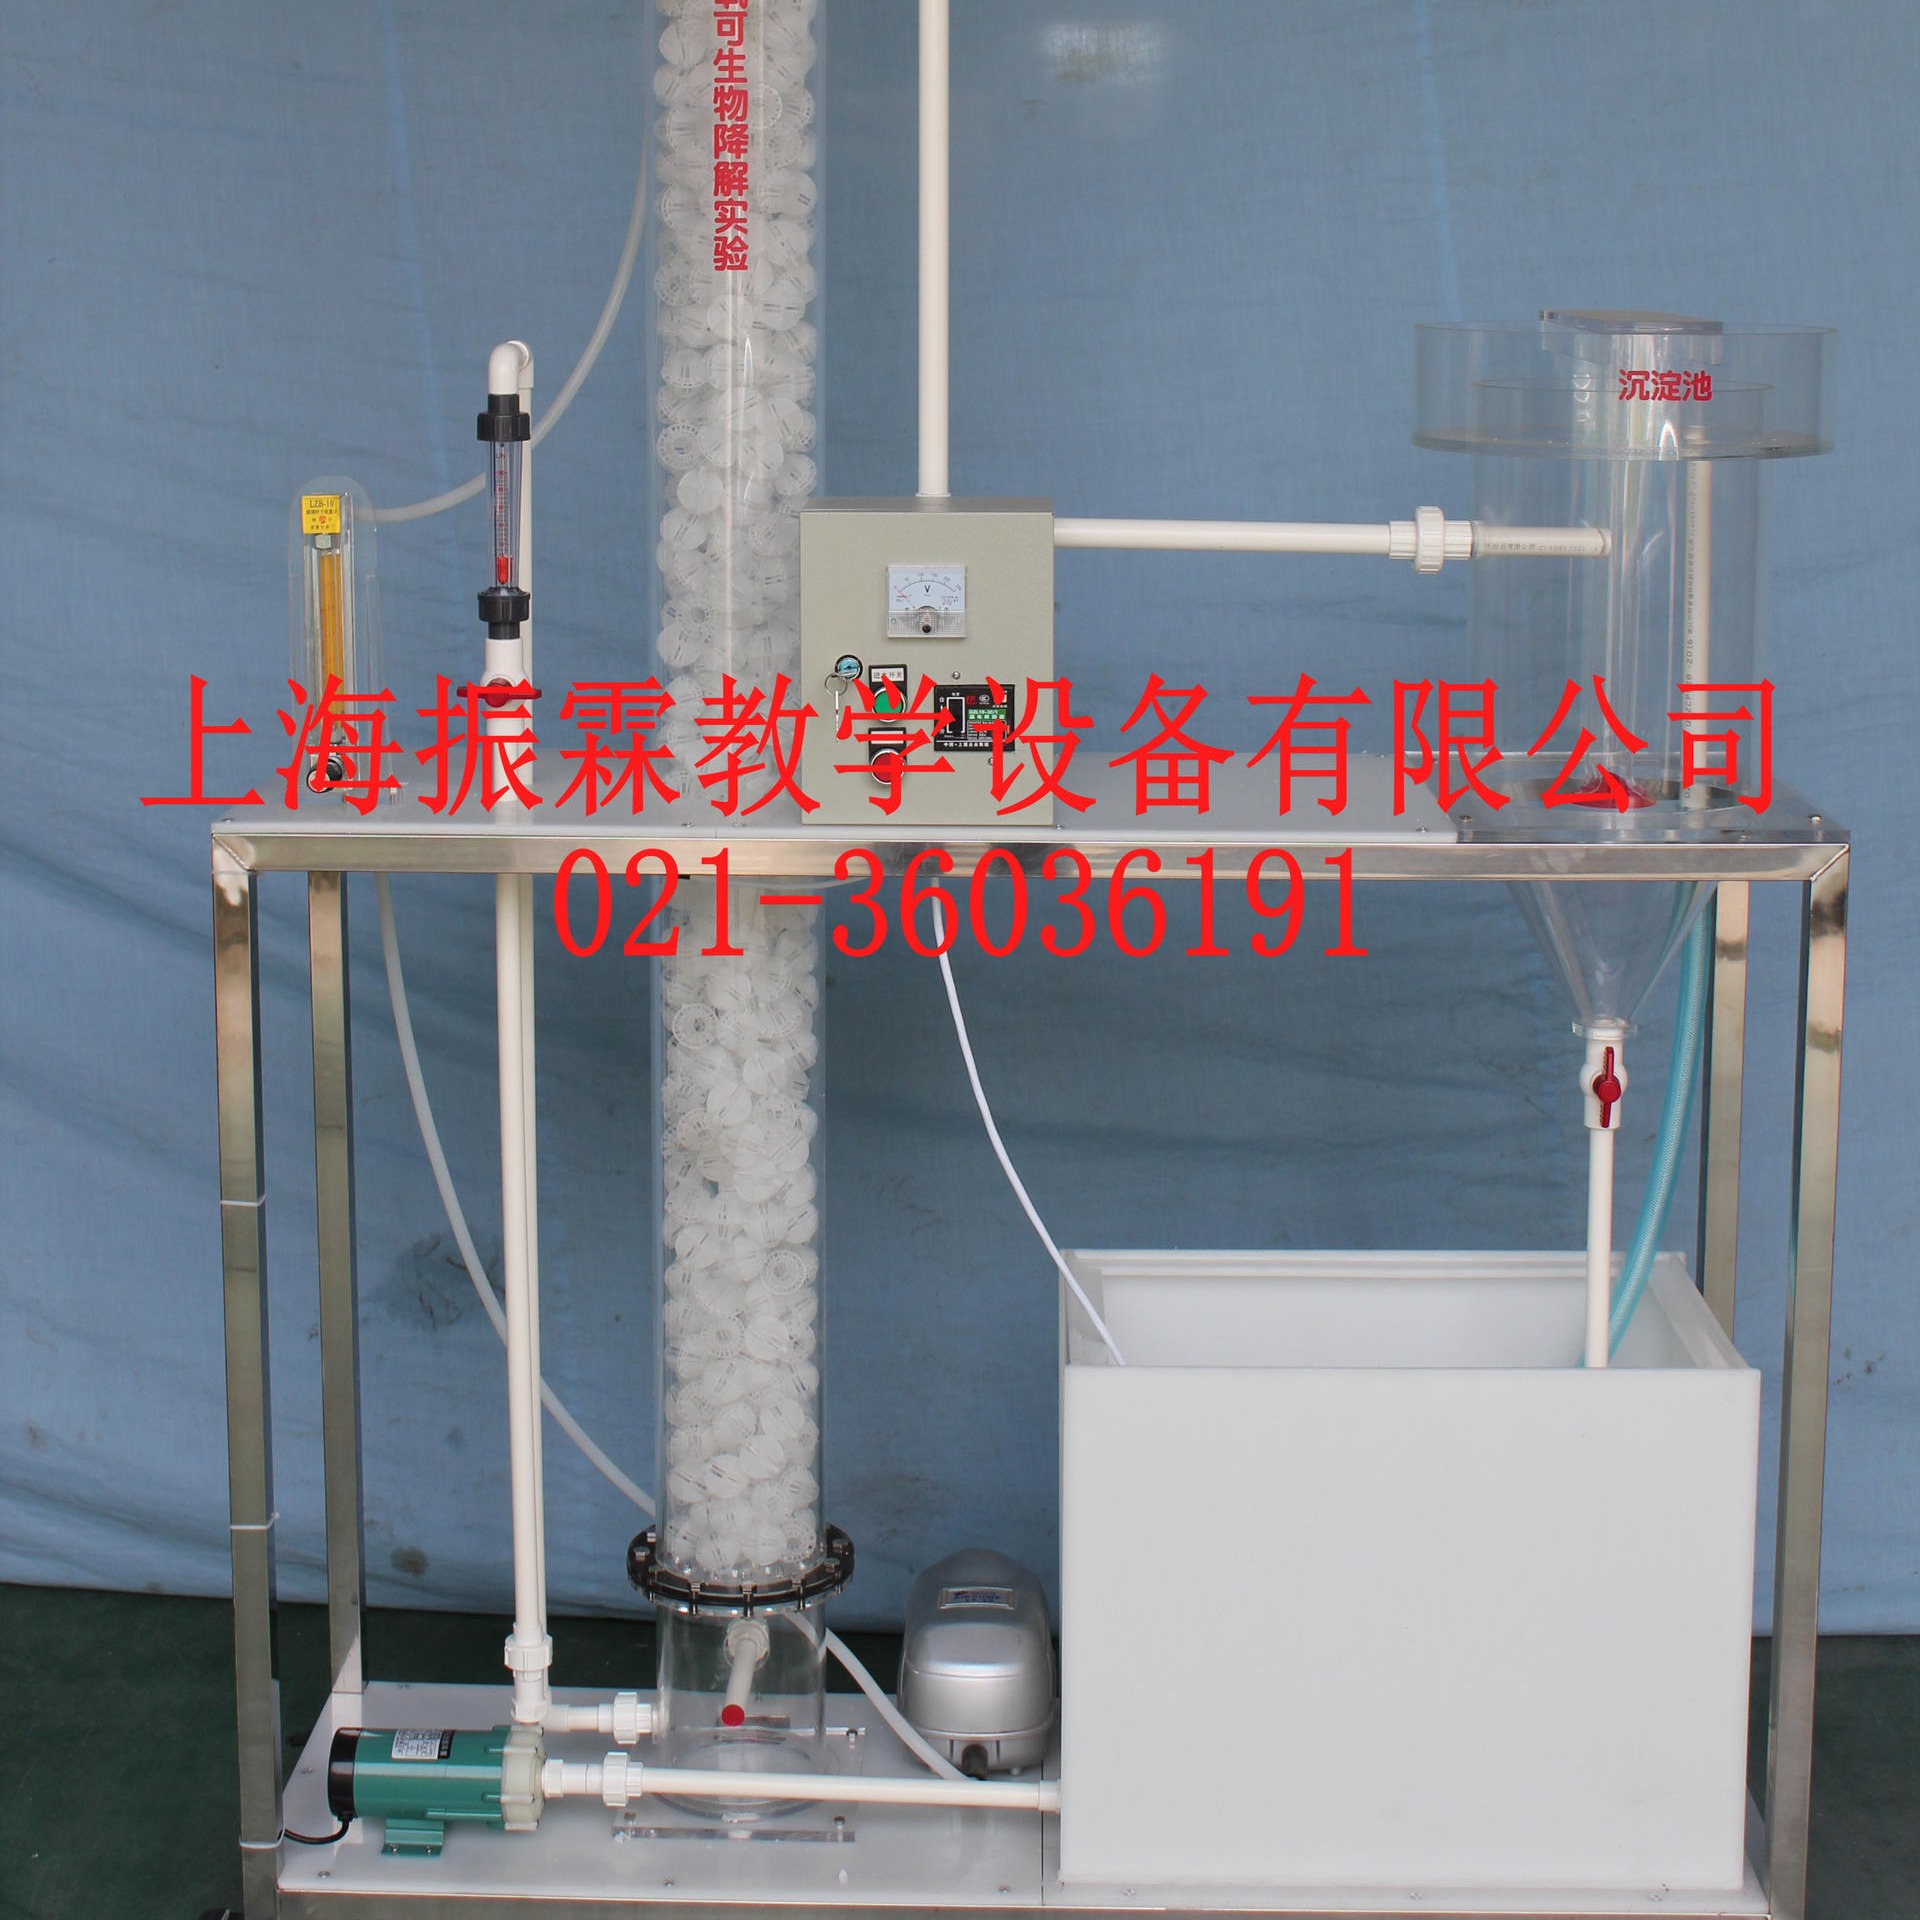 ZLHJ-V109型废水好氧可生物降解性实验装置 废水好氧可生物降解性实验台 废水好氧可生物降解性实训设备 振霖制造